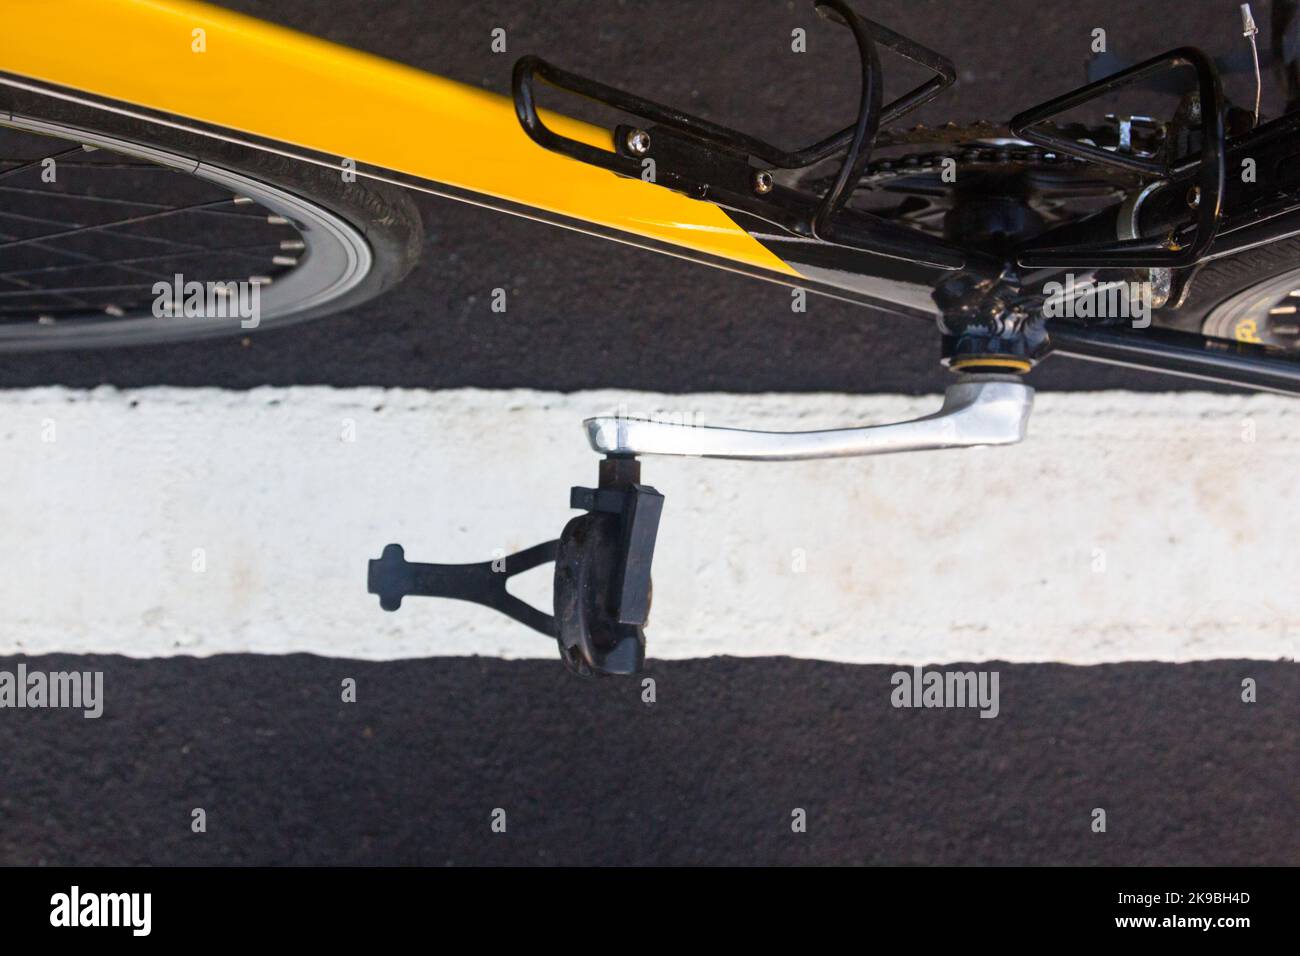 Una bici da corsa gialla e nera con un pedale lungo una linea Foto Stock